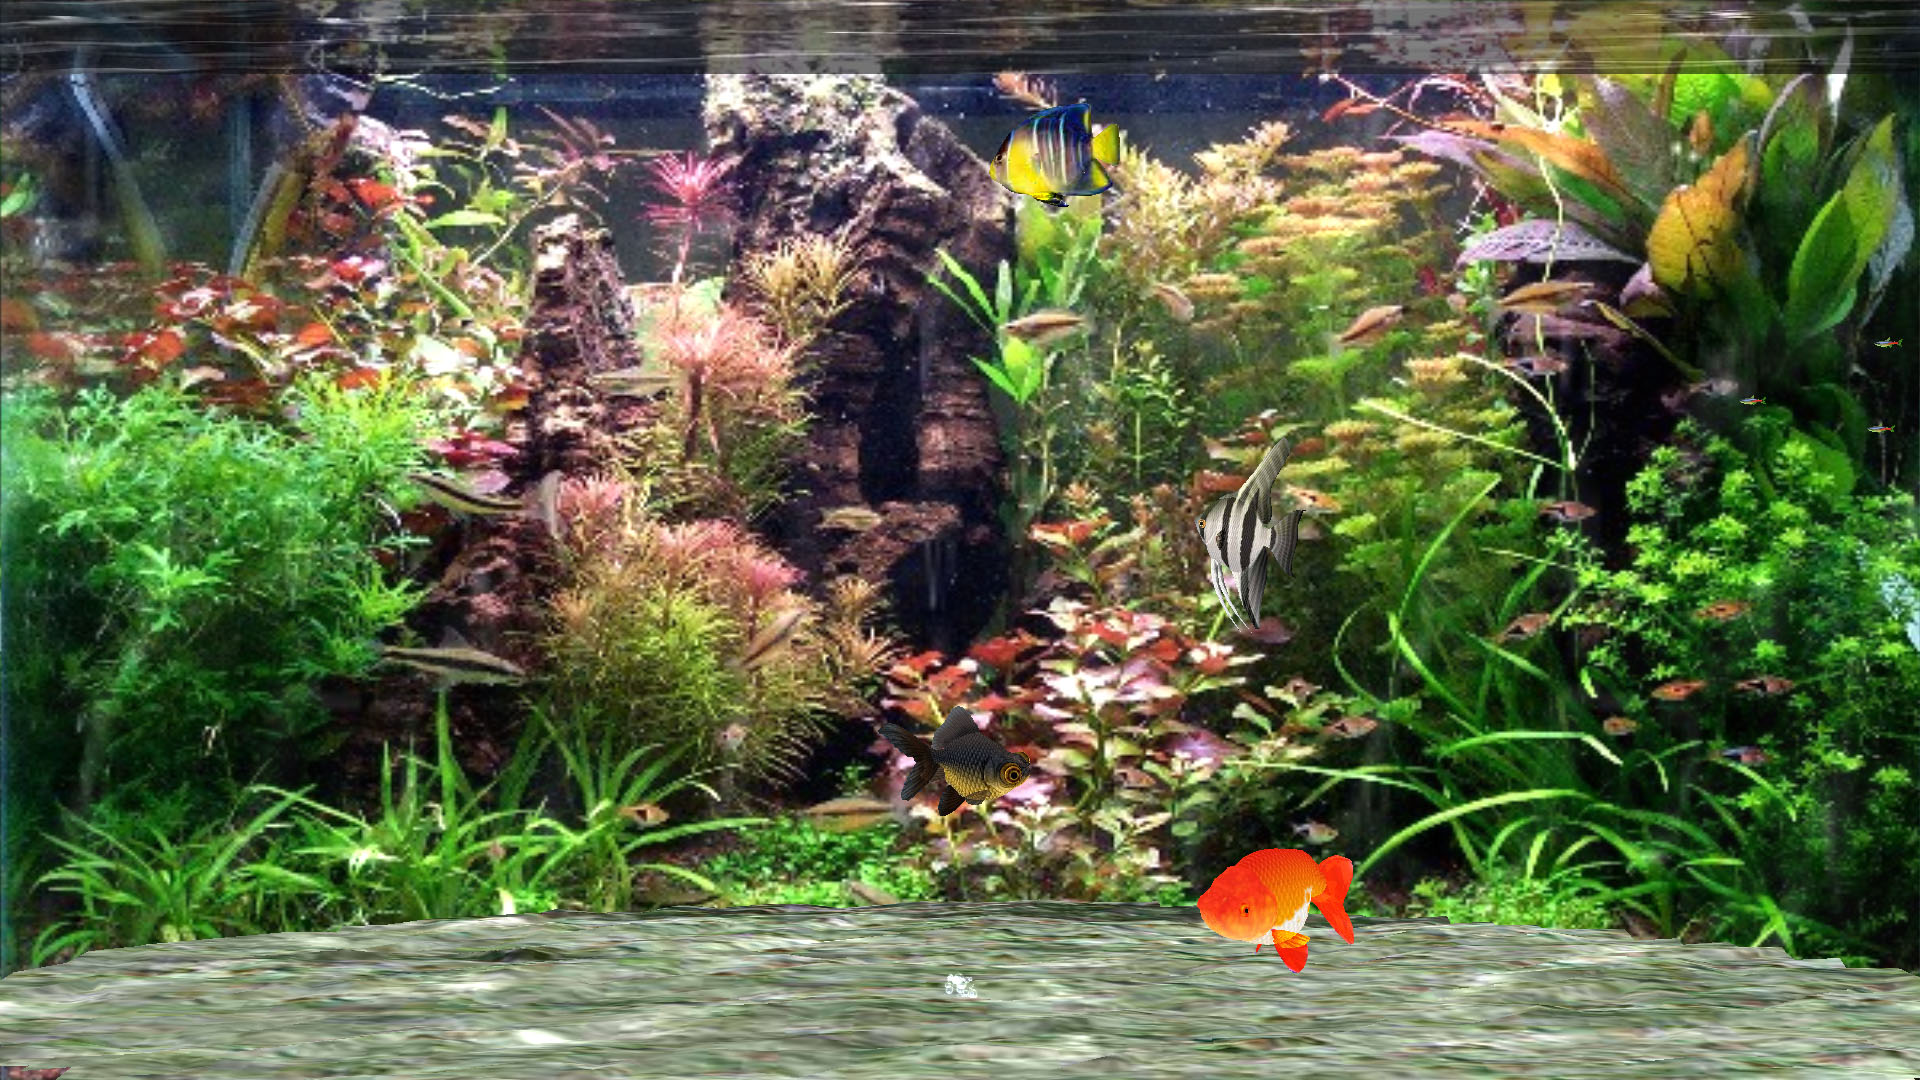 Aquarium Screensaver for Windows 10 - Fantastic Aquarium 3D Screensaver